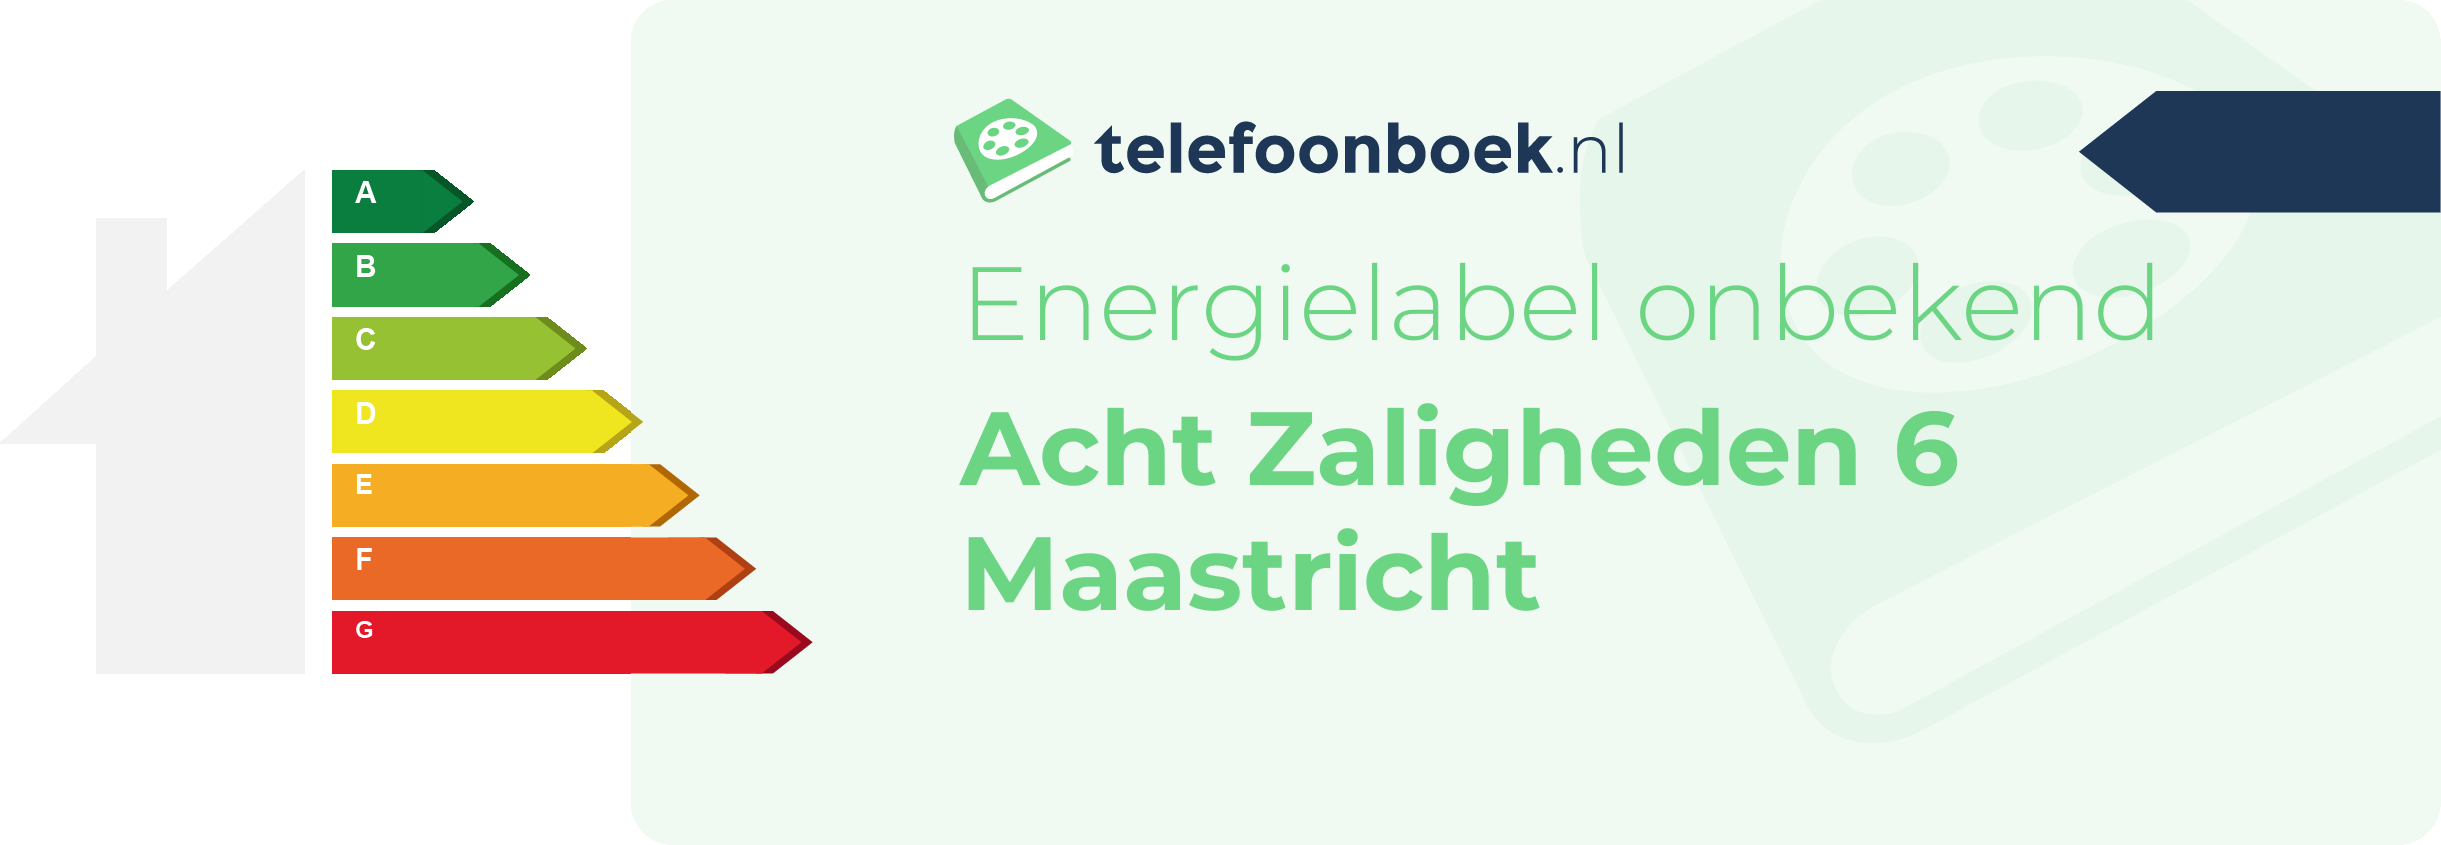 Energielabel Acht Zaligheden 6 Maastricht